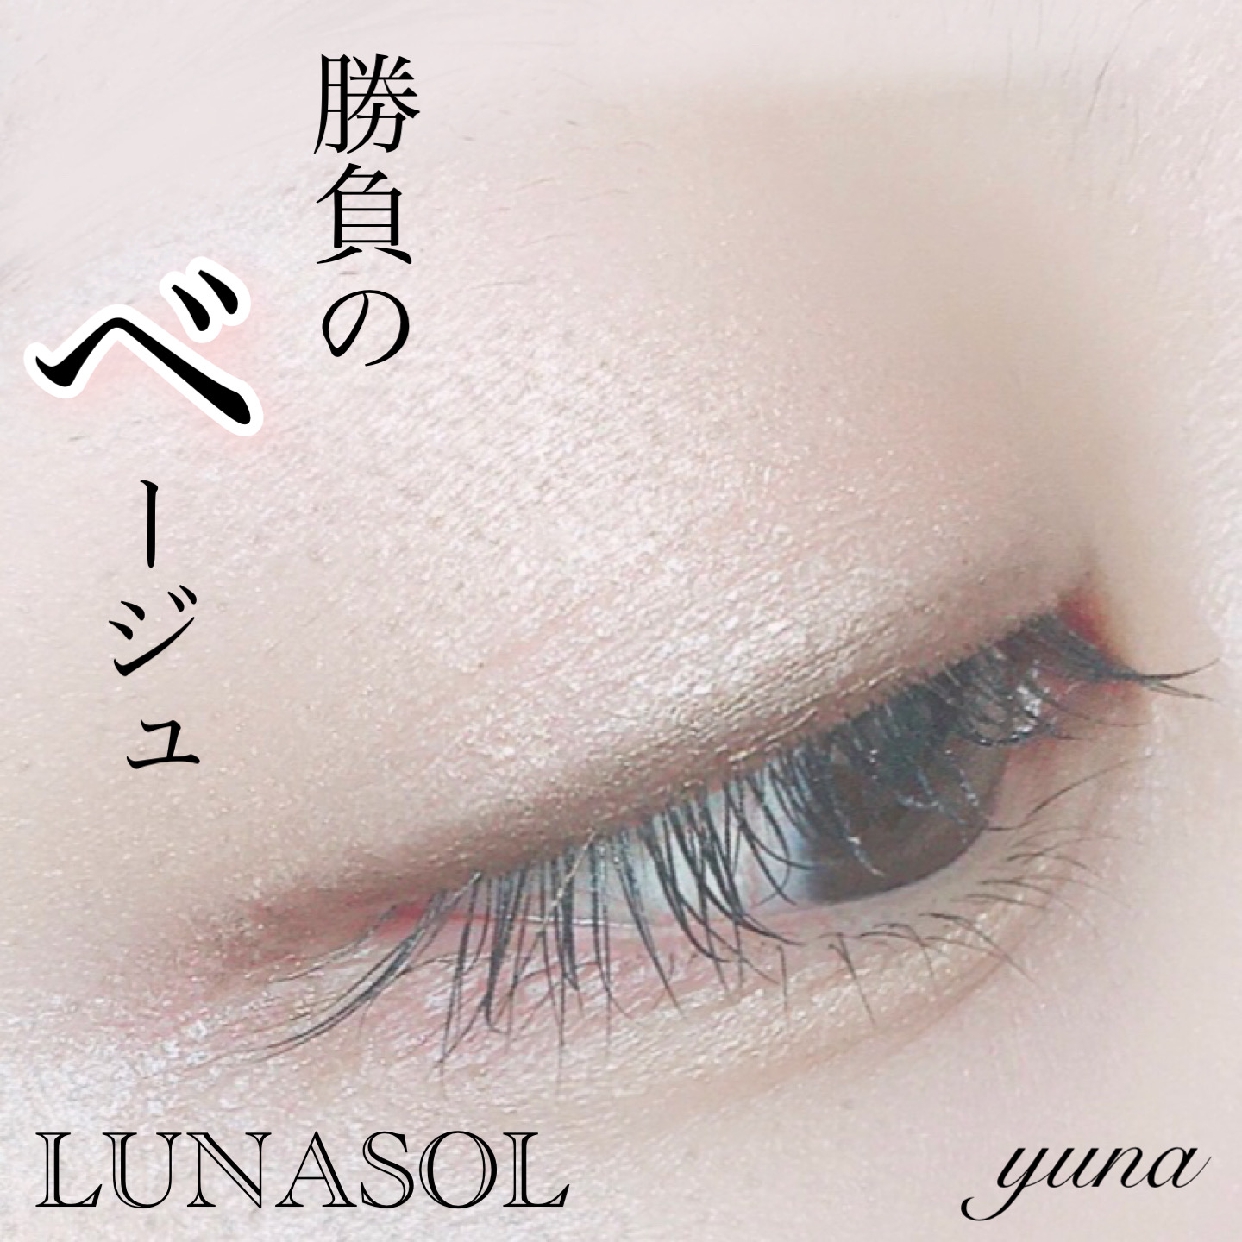 LUNASOL(ルナソル) スキンモデリングアイズを使ったyunaさんのクチコミ画像1